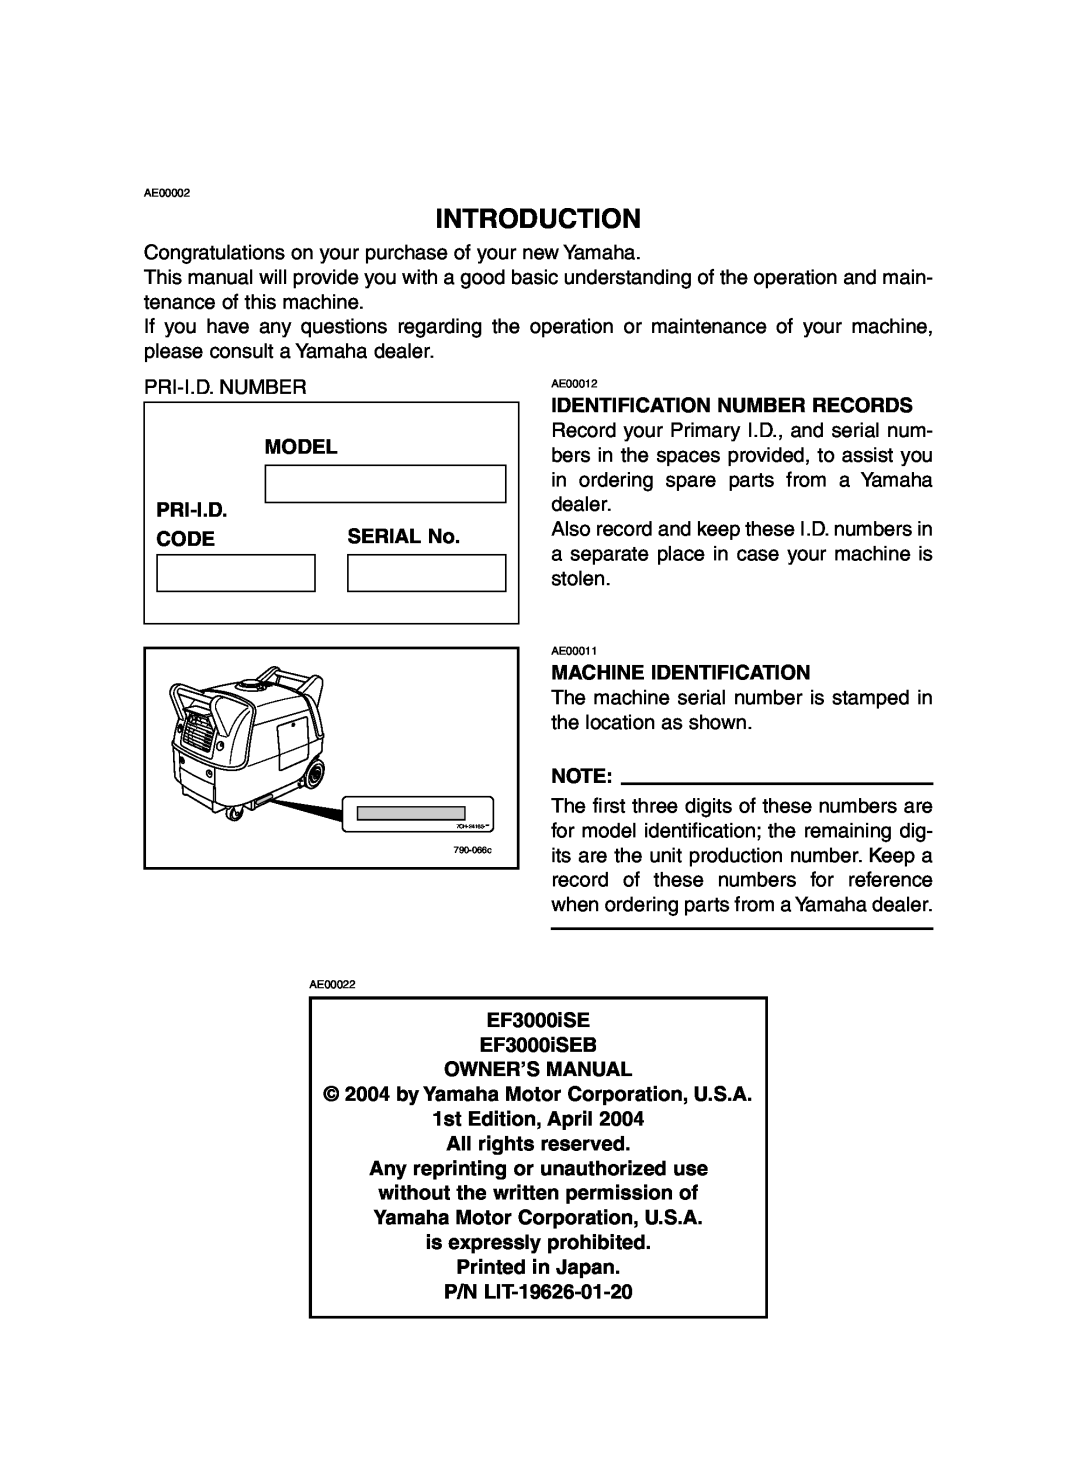 Yamaha EF3000iSE, EF3000iSEB owner manual Introduction 